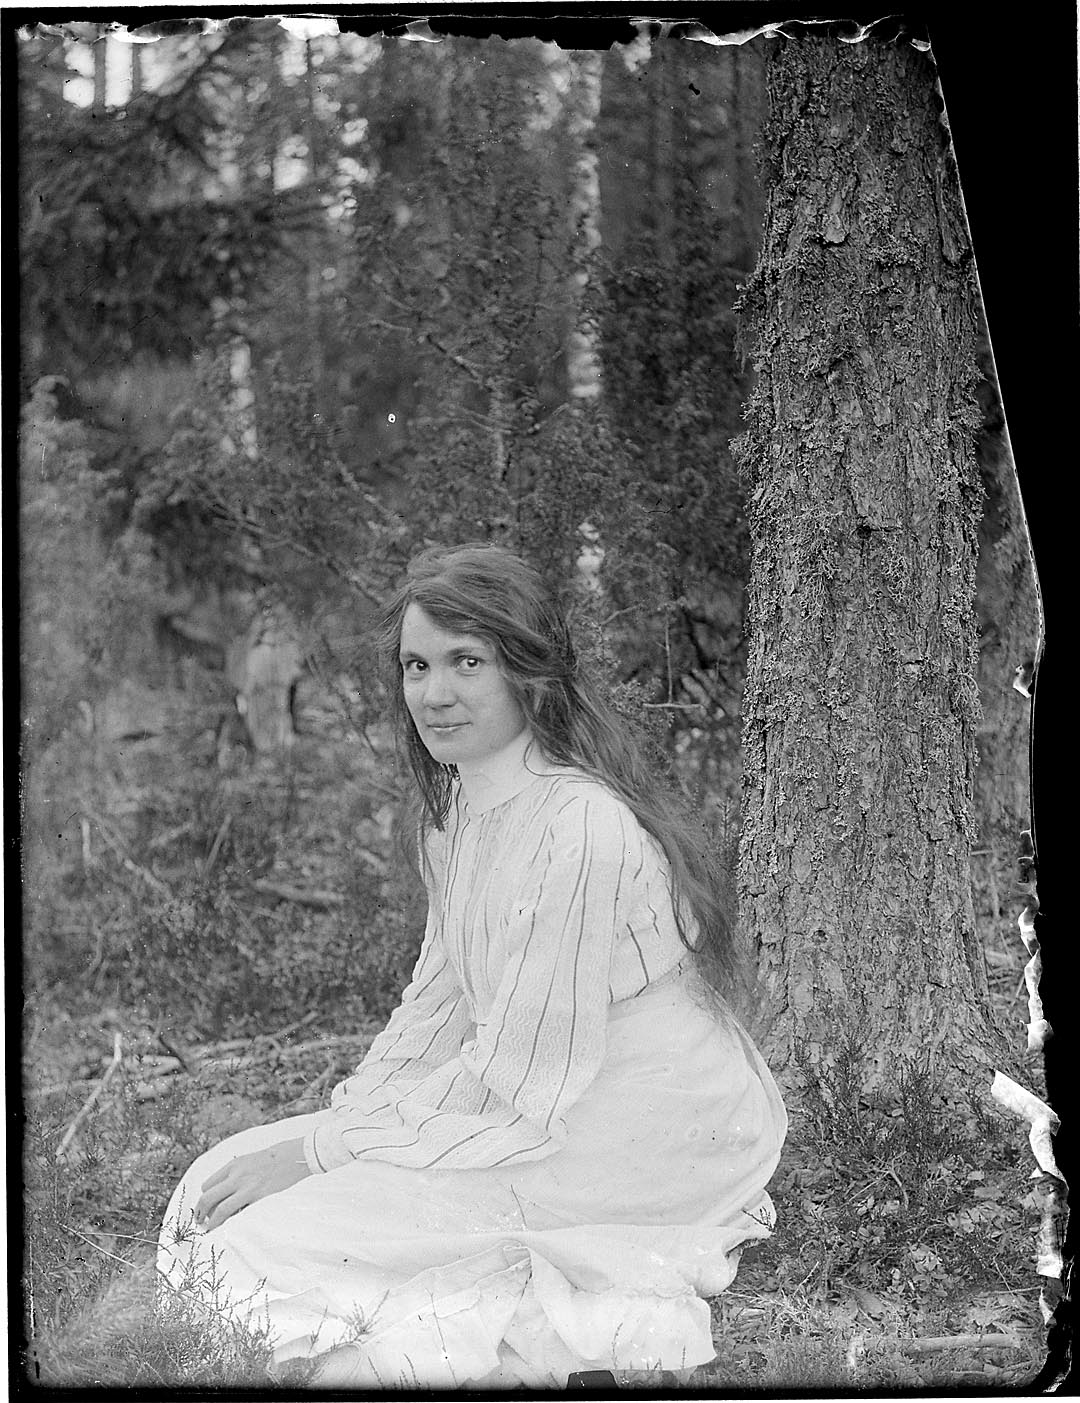 Vaaleaan asuun pukeutunut nainen istuu maassa puun juurella ja katsoo kameraan, pitkät hiukset ovat auki.